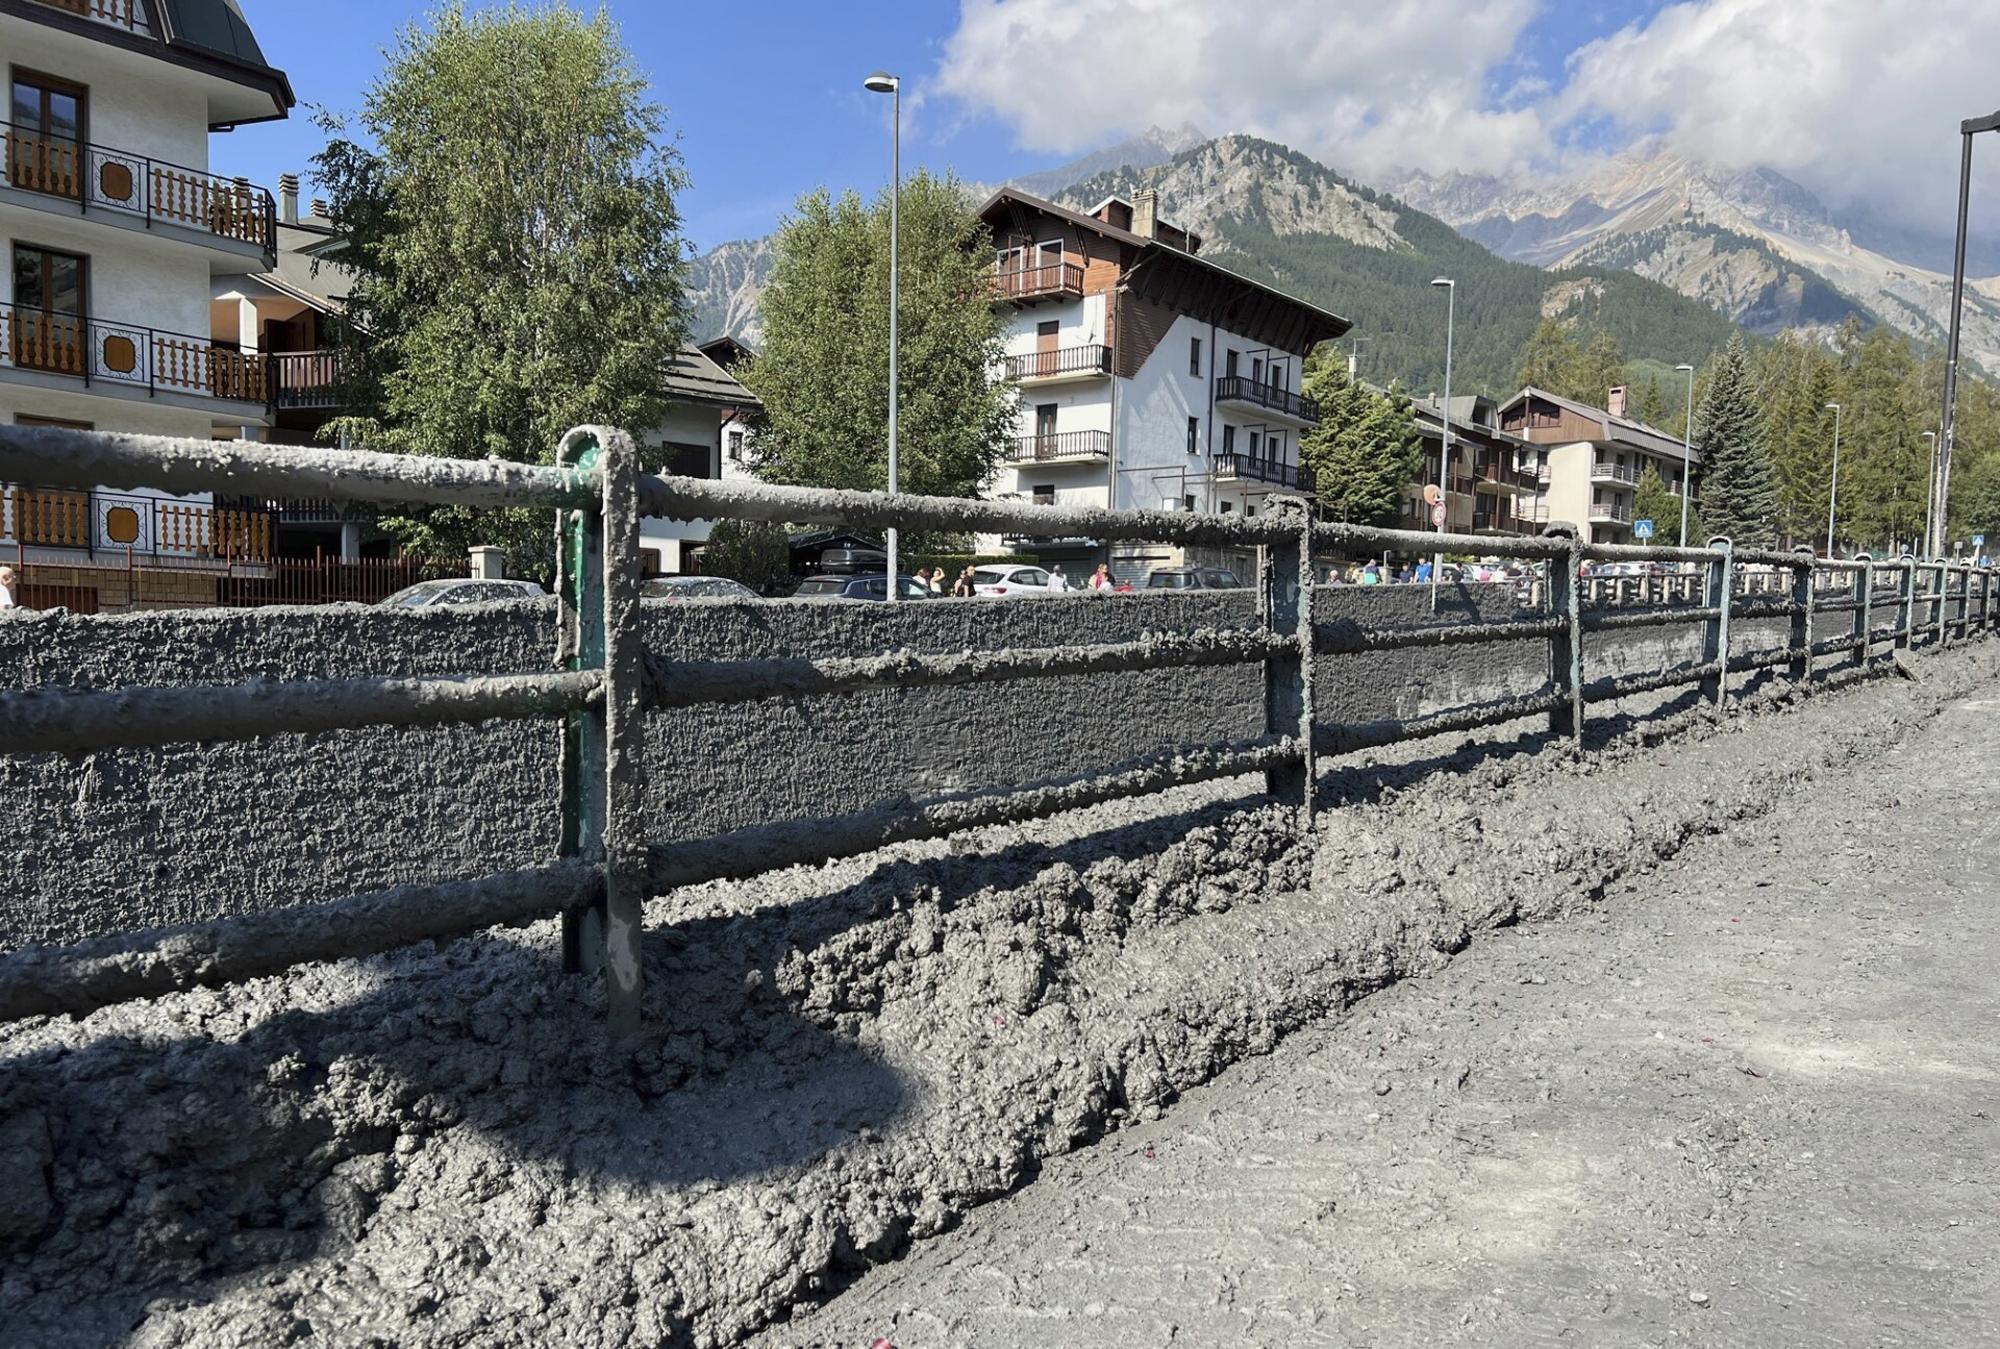 Dážď a zosuvy pôdy spôsobili veľké škody v alpskej obci Bardonecchia.